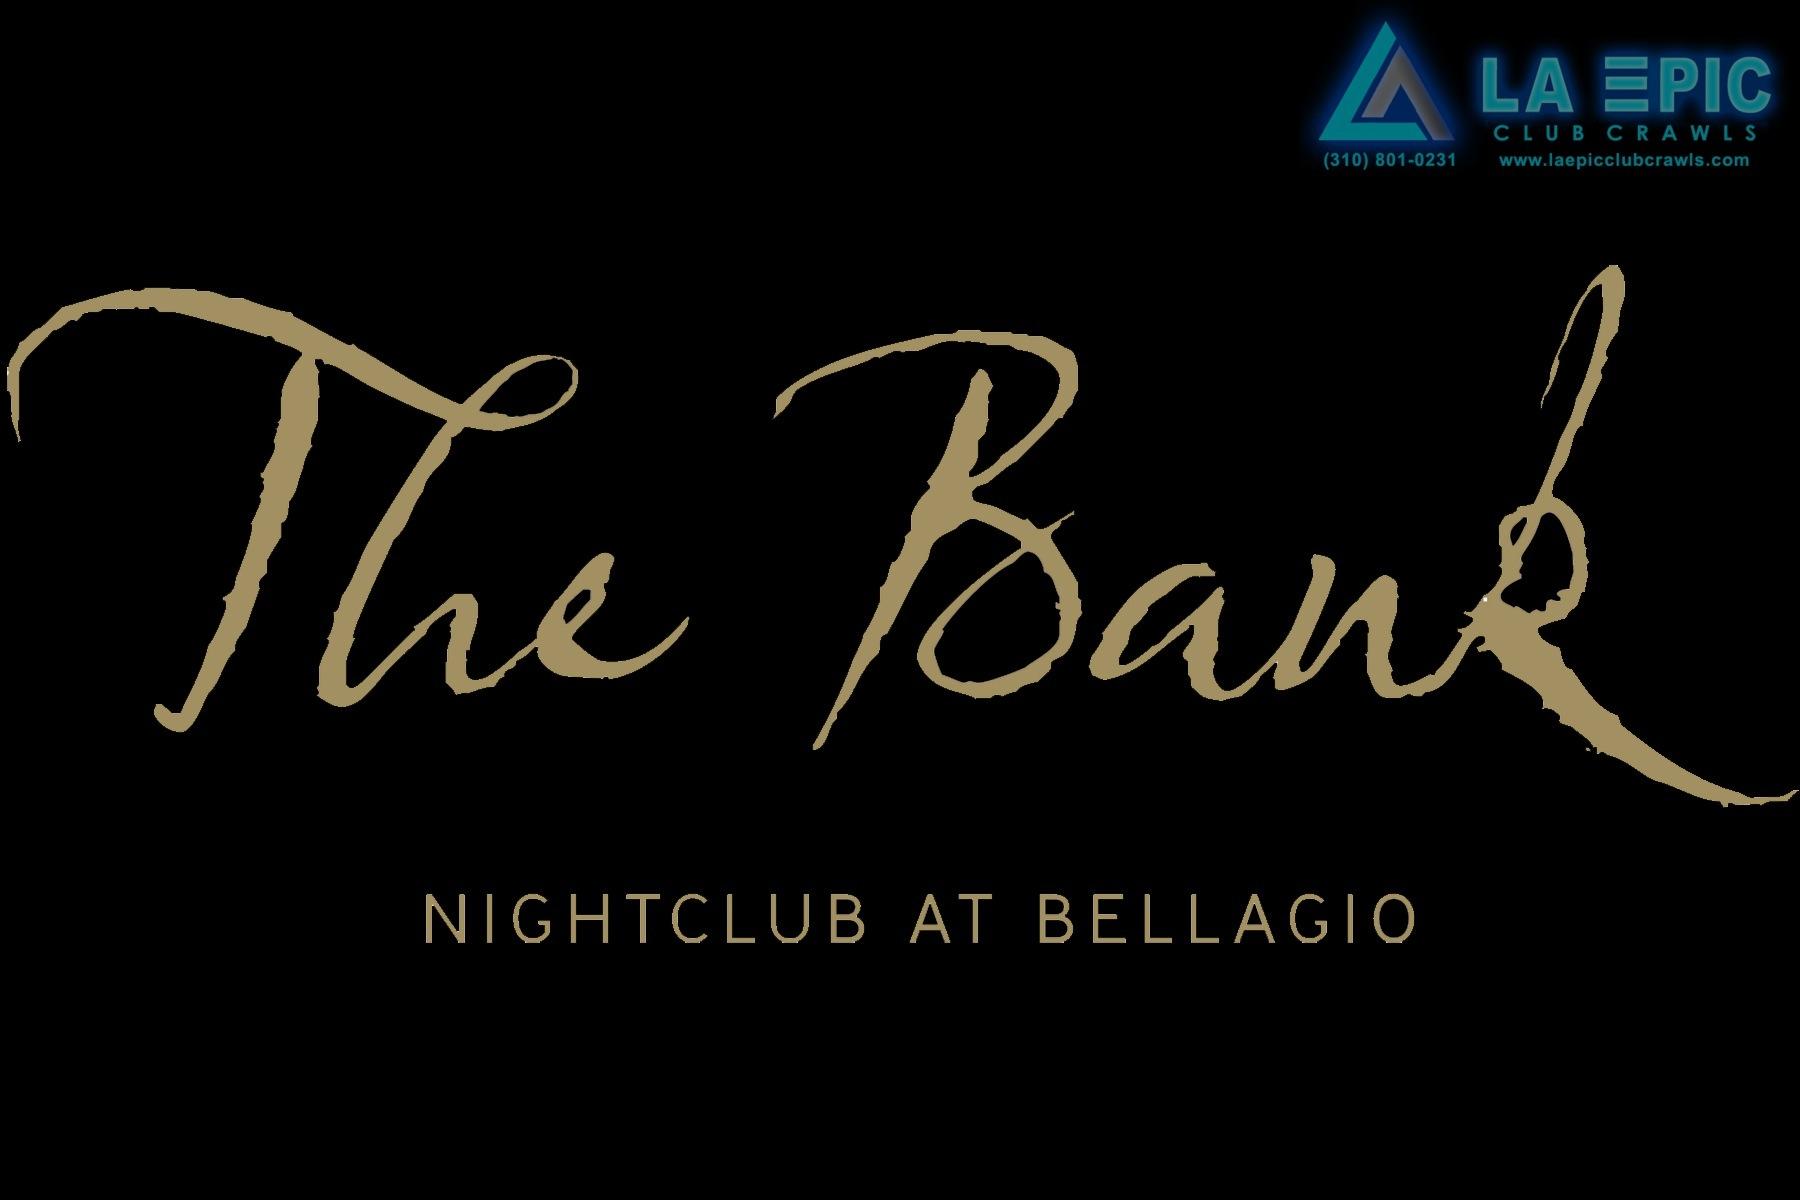 Epic Night Club Logo - The Bank Nightclub - LA EPIC Club Crawls Las Vegas